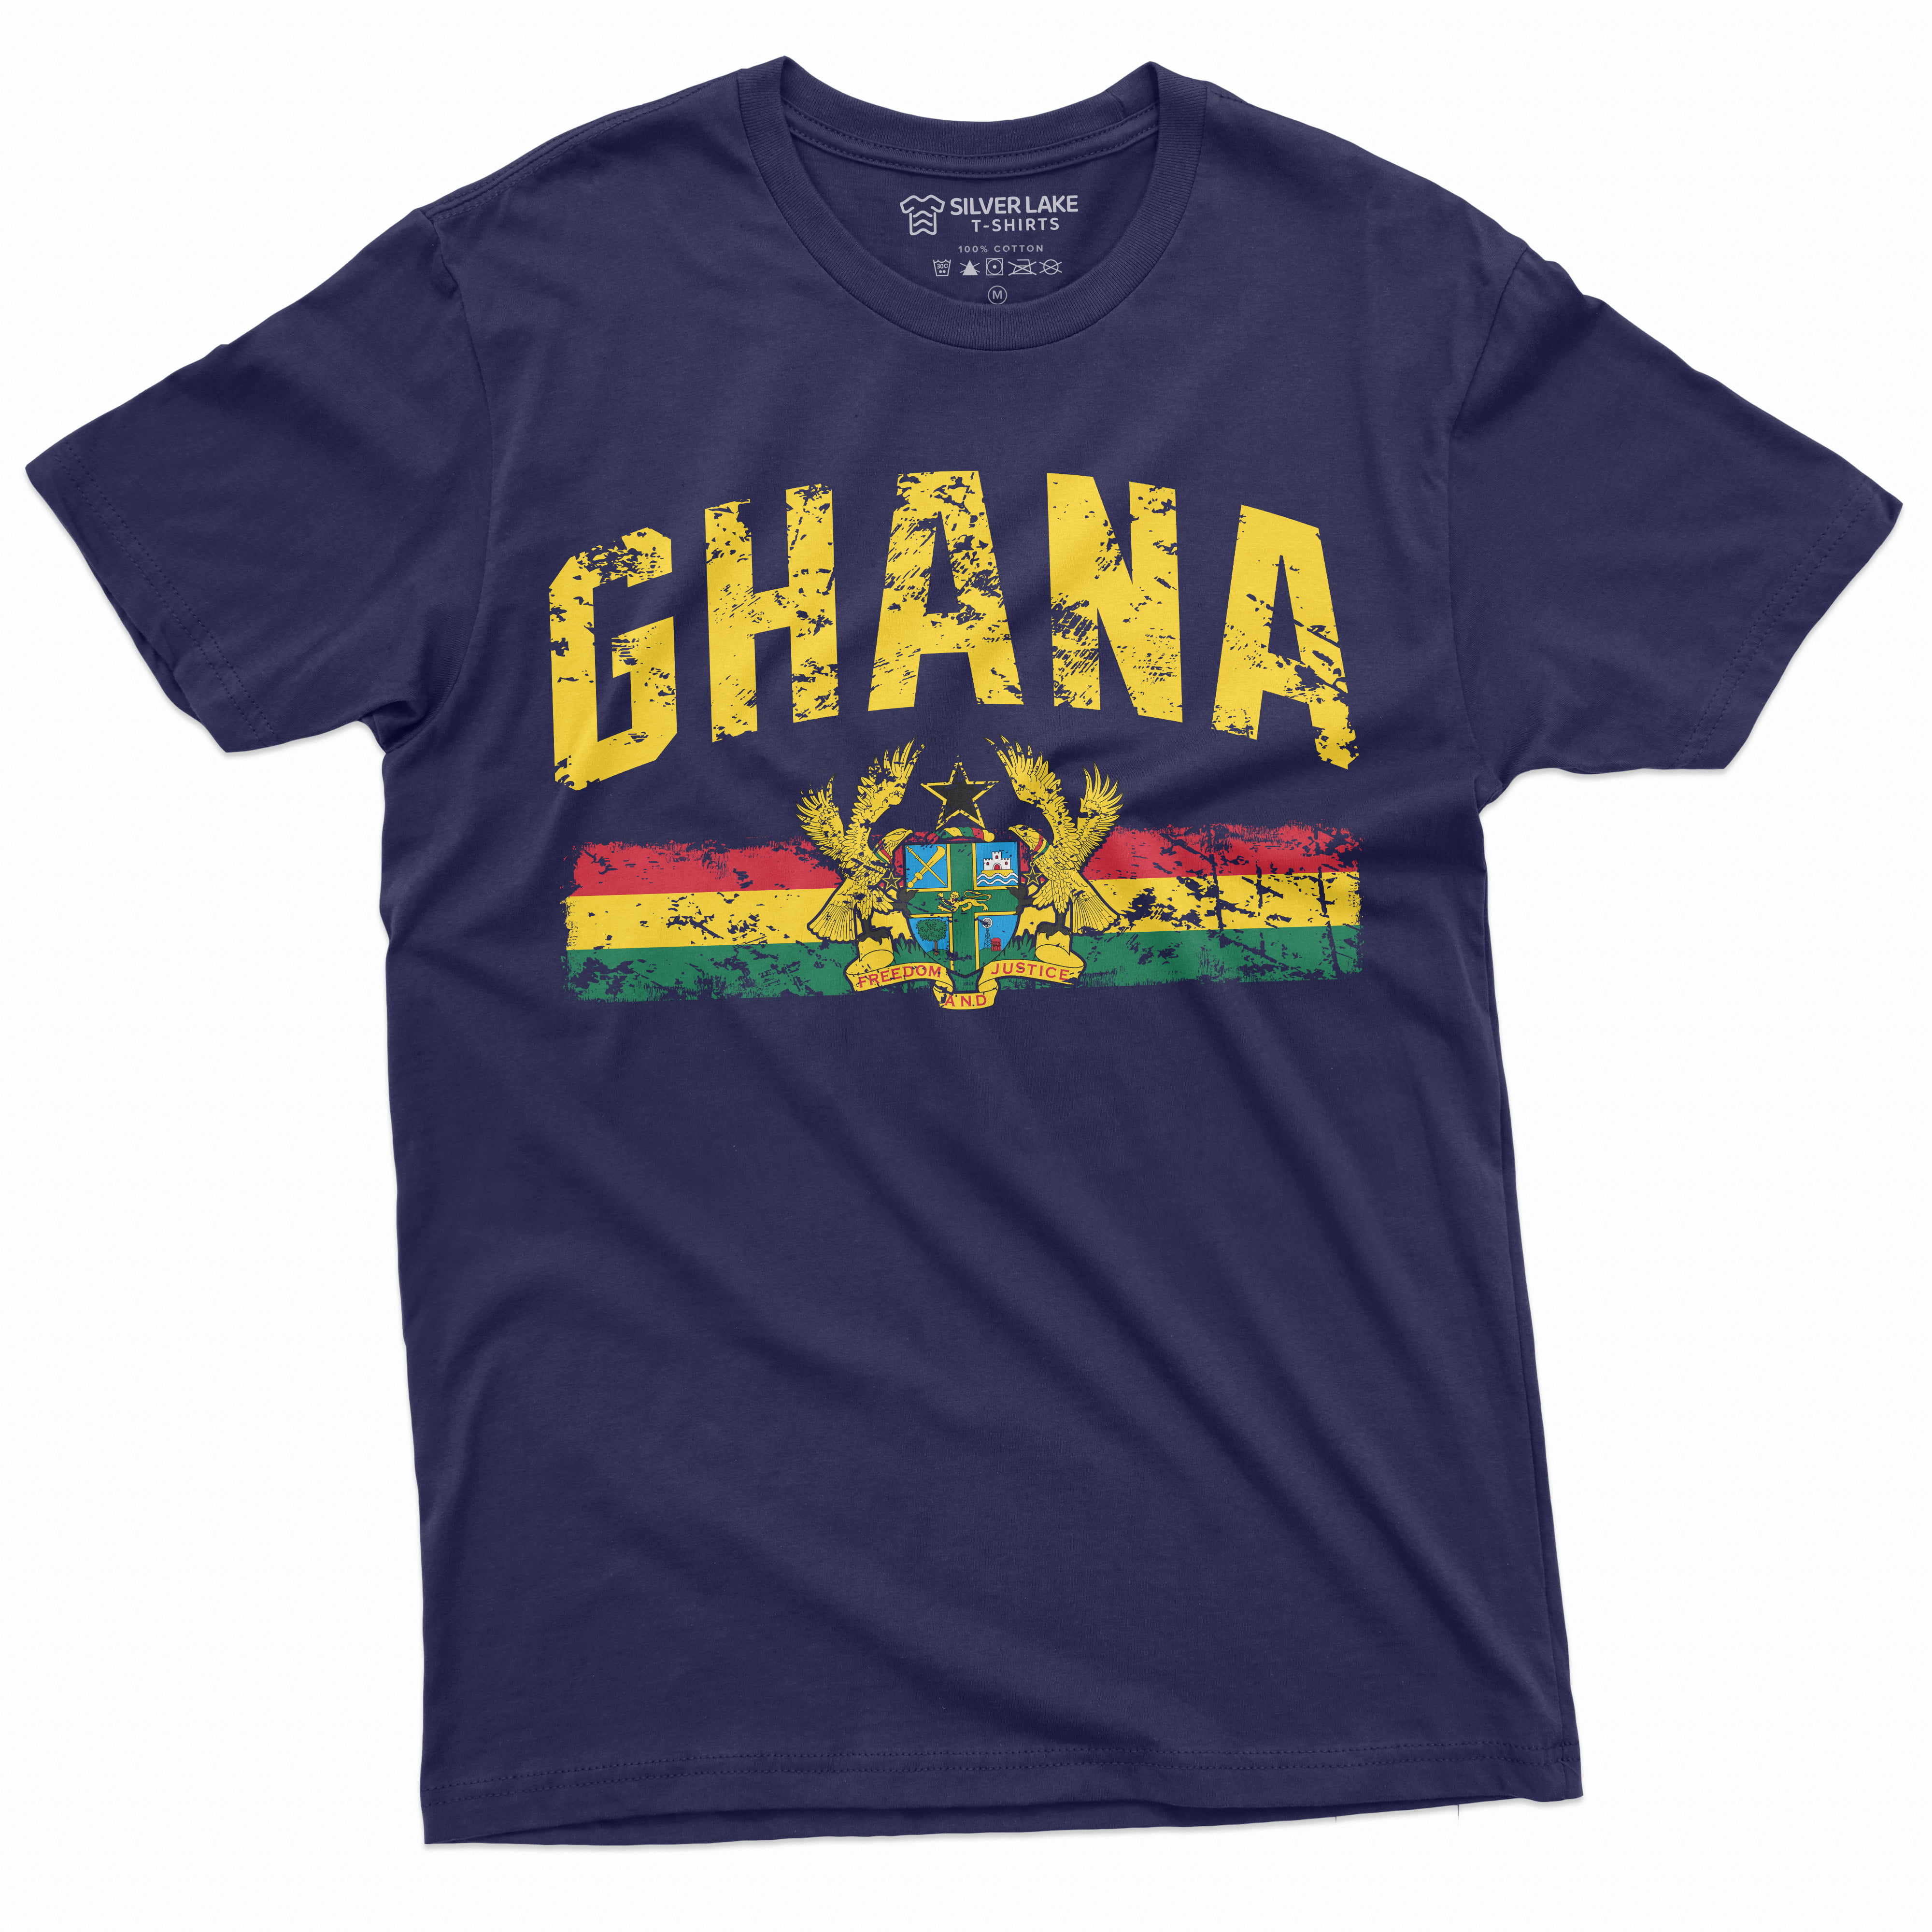 ghana soccer shirt